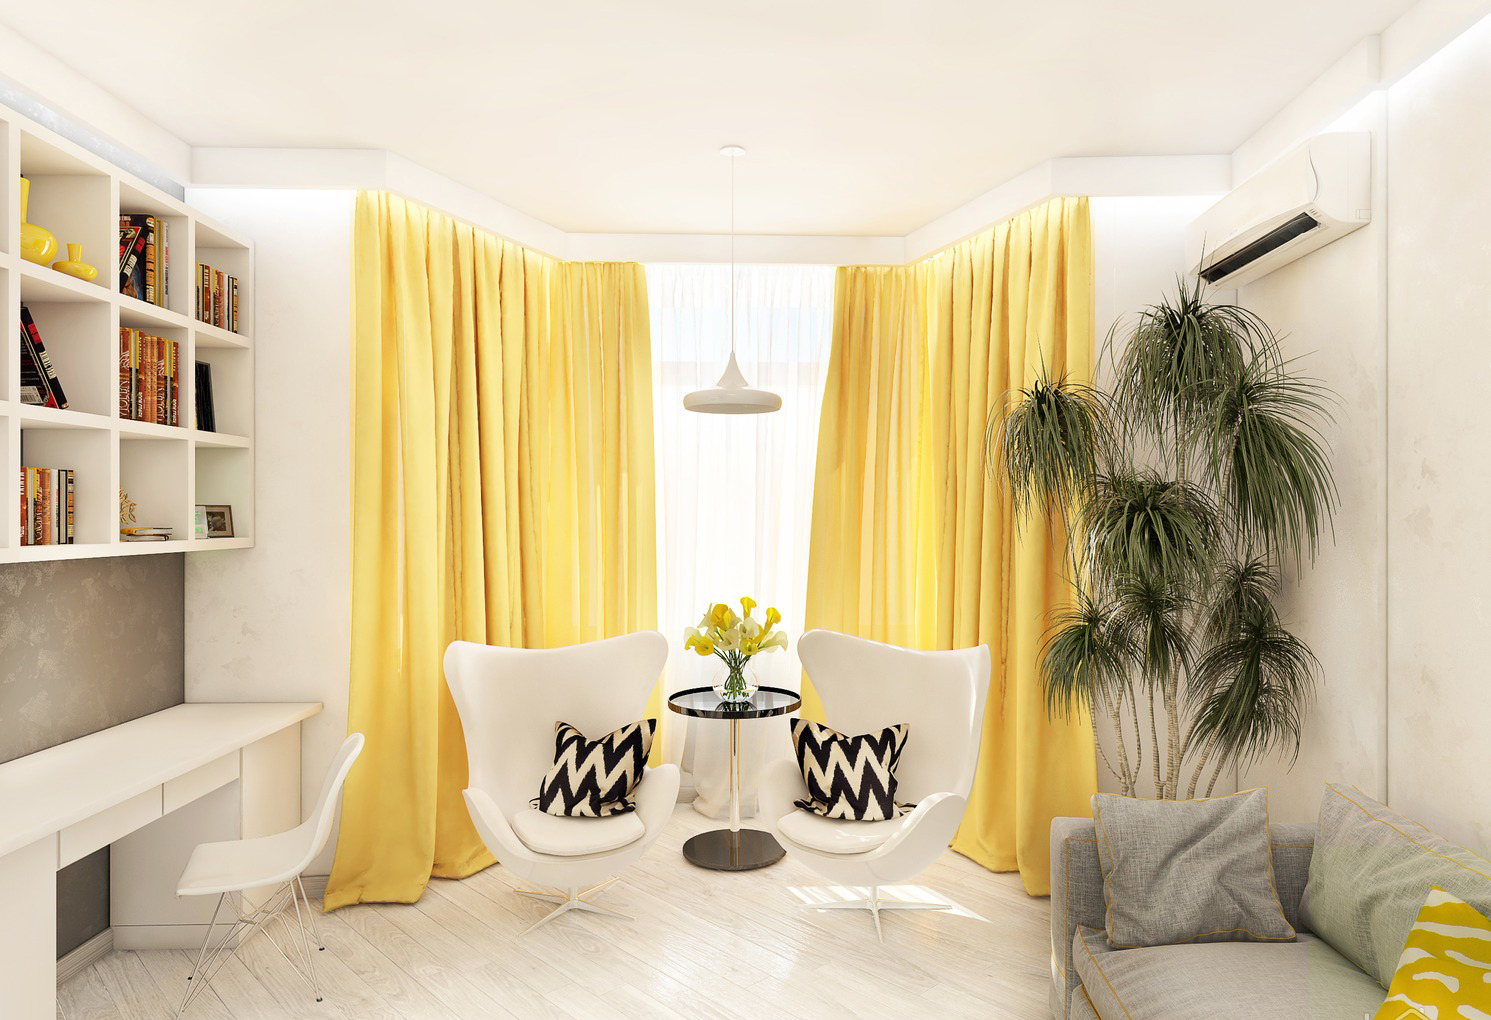 Příklad použití světle žluté v interiéru bytu